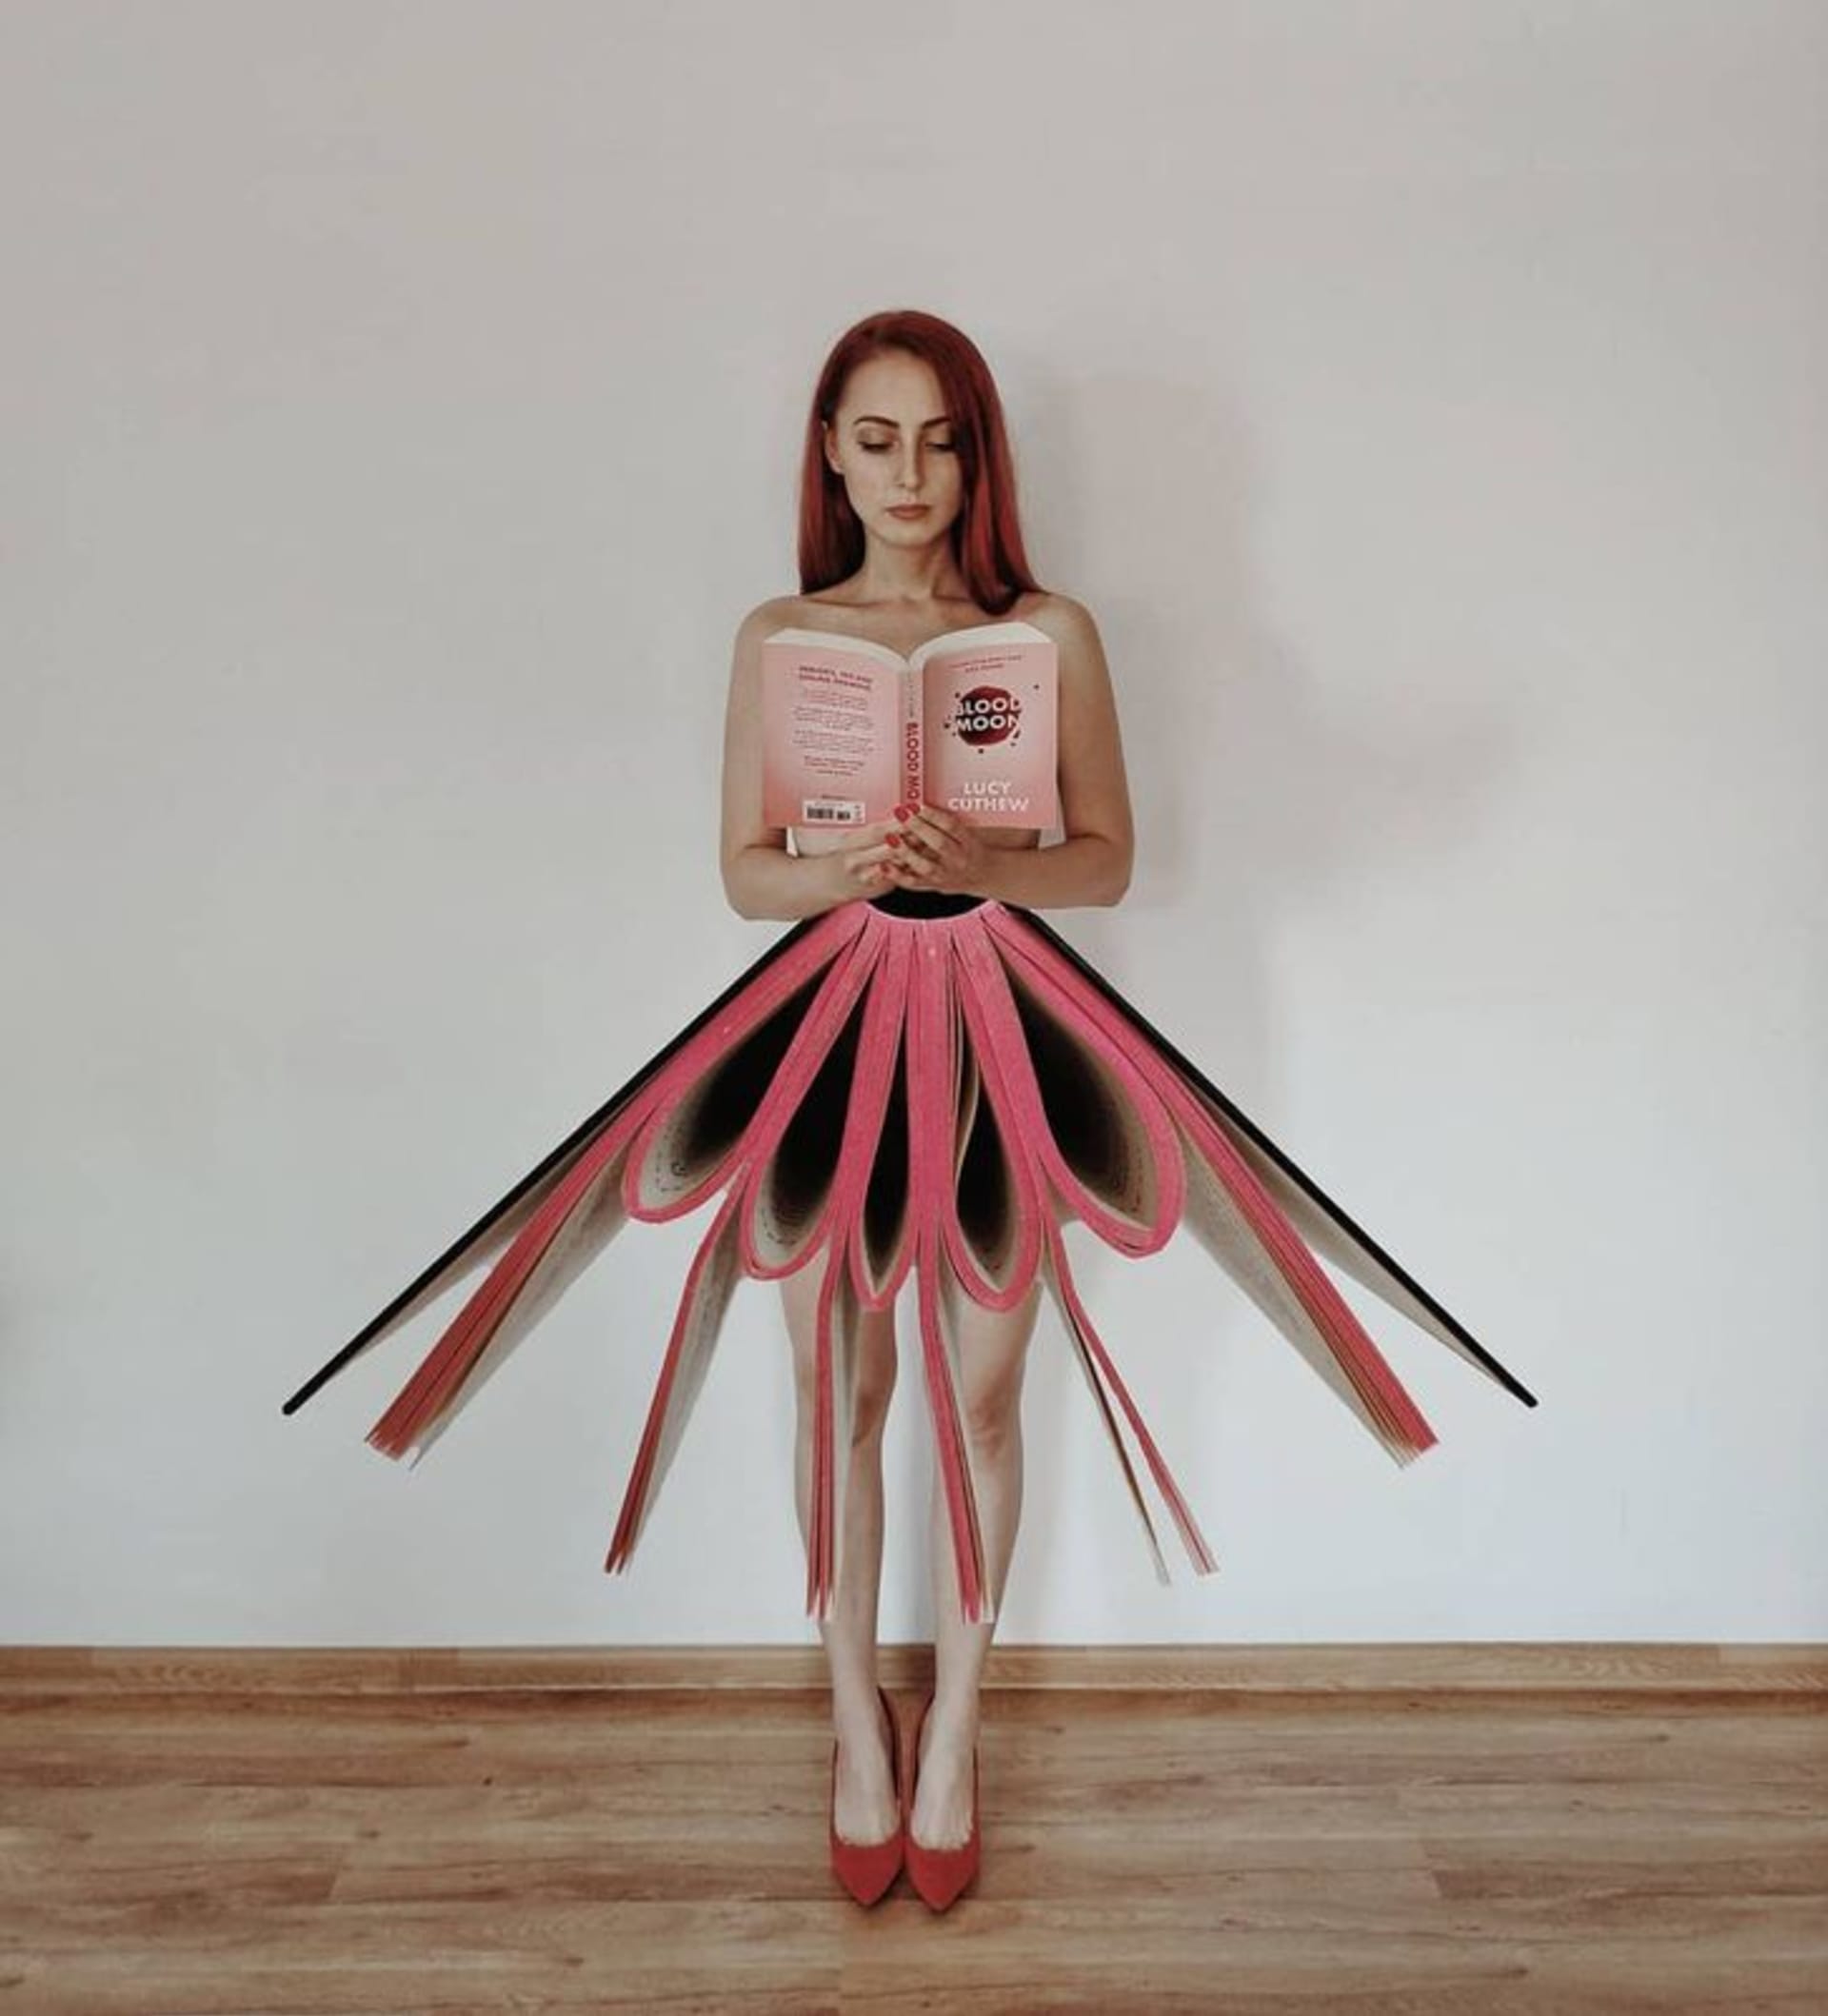 Dívka kombinuje své dvě vášně - knihy a umění 12